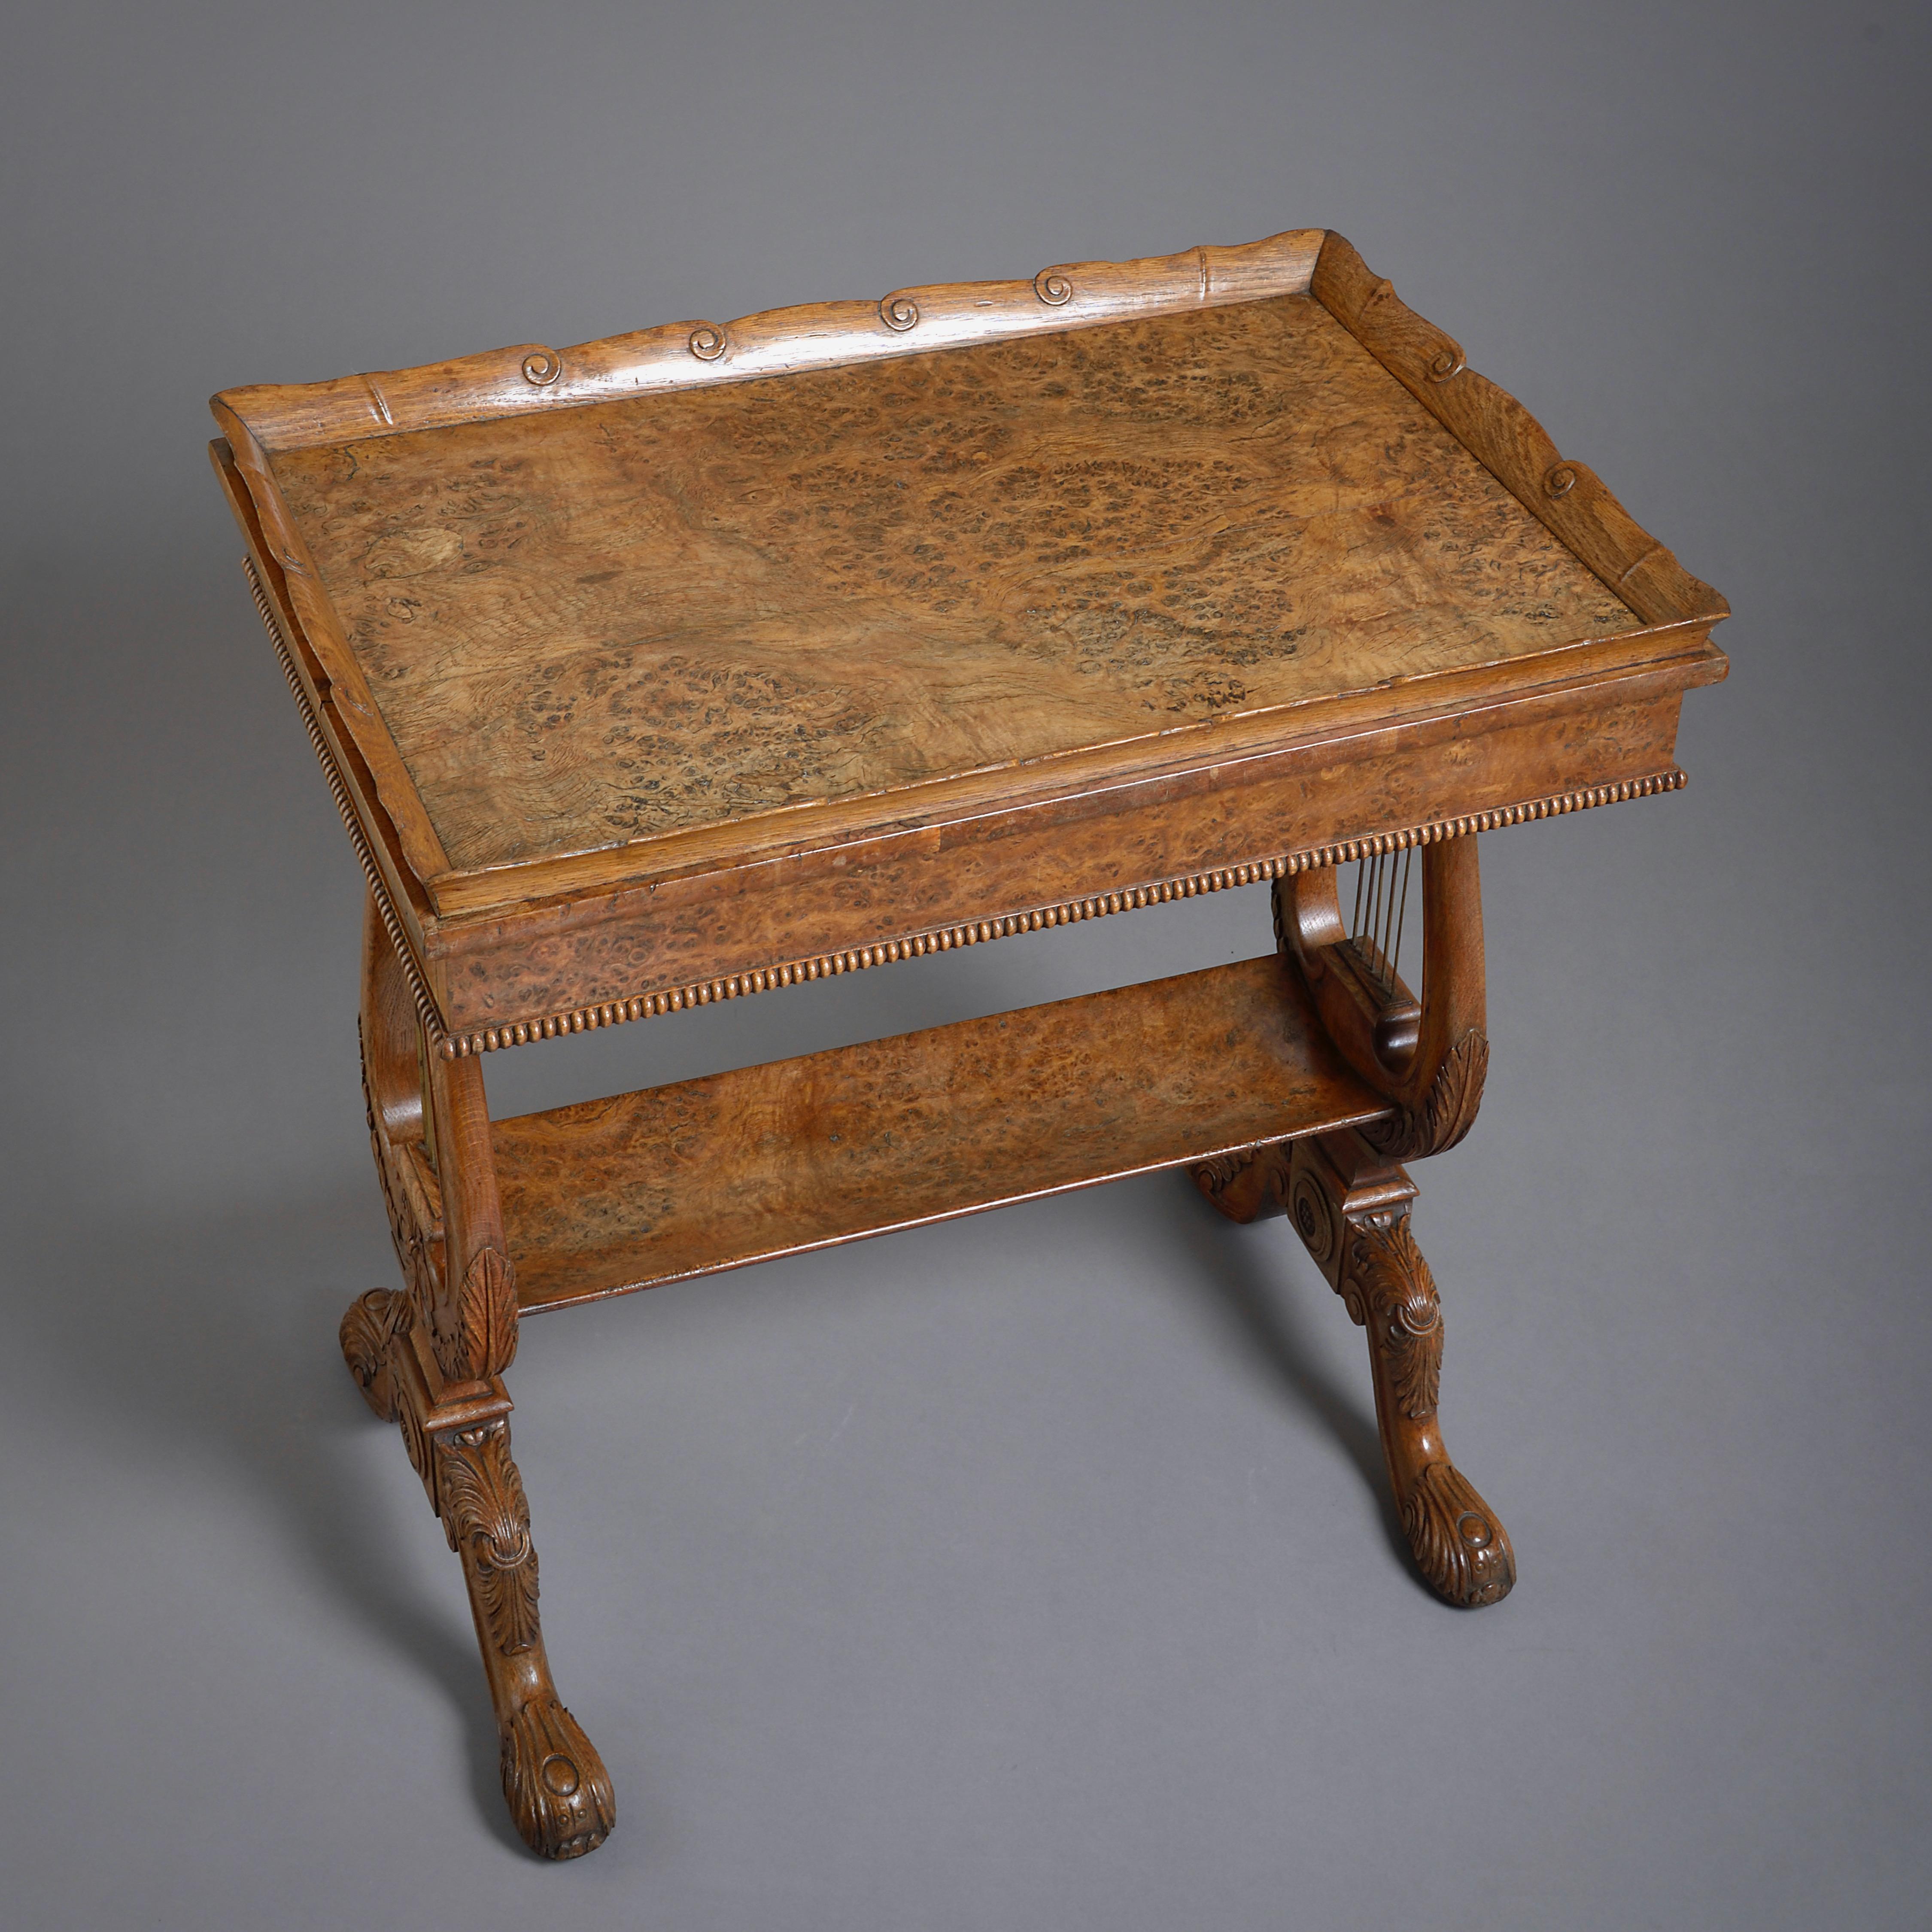 Regency Oak and Burr-Oak Tray-Top Table by Gillows 1